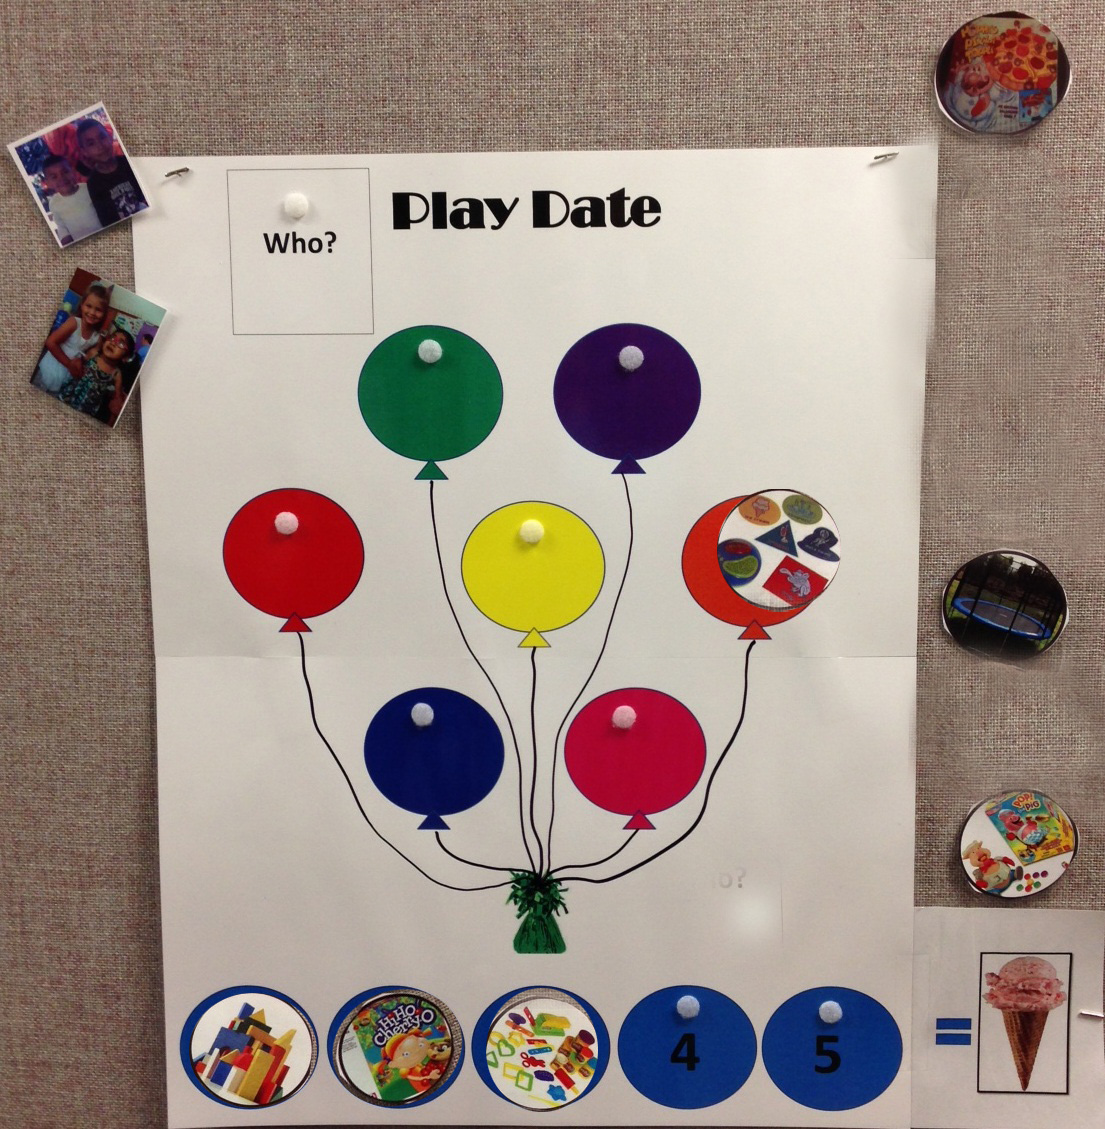 Cartel Playdate con los globos en el centro. Algunas de las fotos de la actividad en los globos se han movido a la parte inferior 5 círculos como un horario visual de lo que se jugarán actividades .